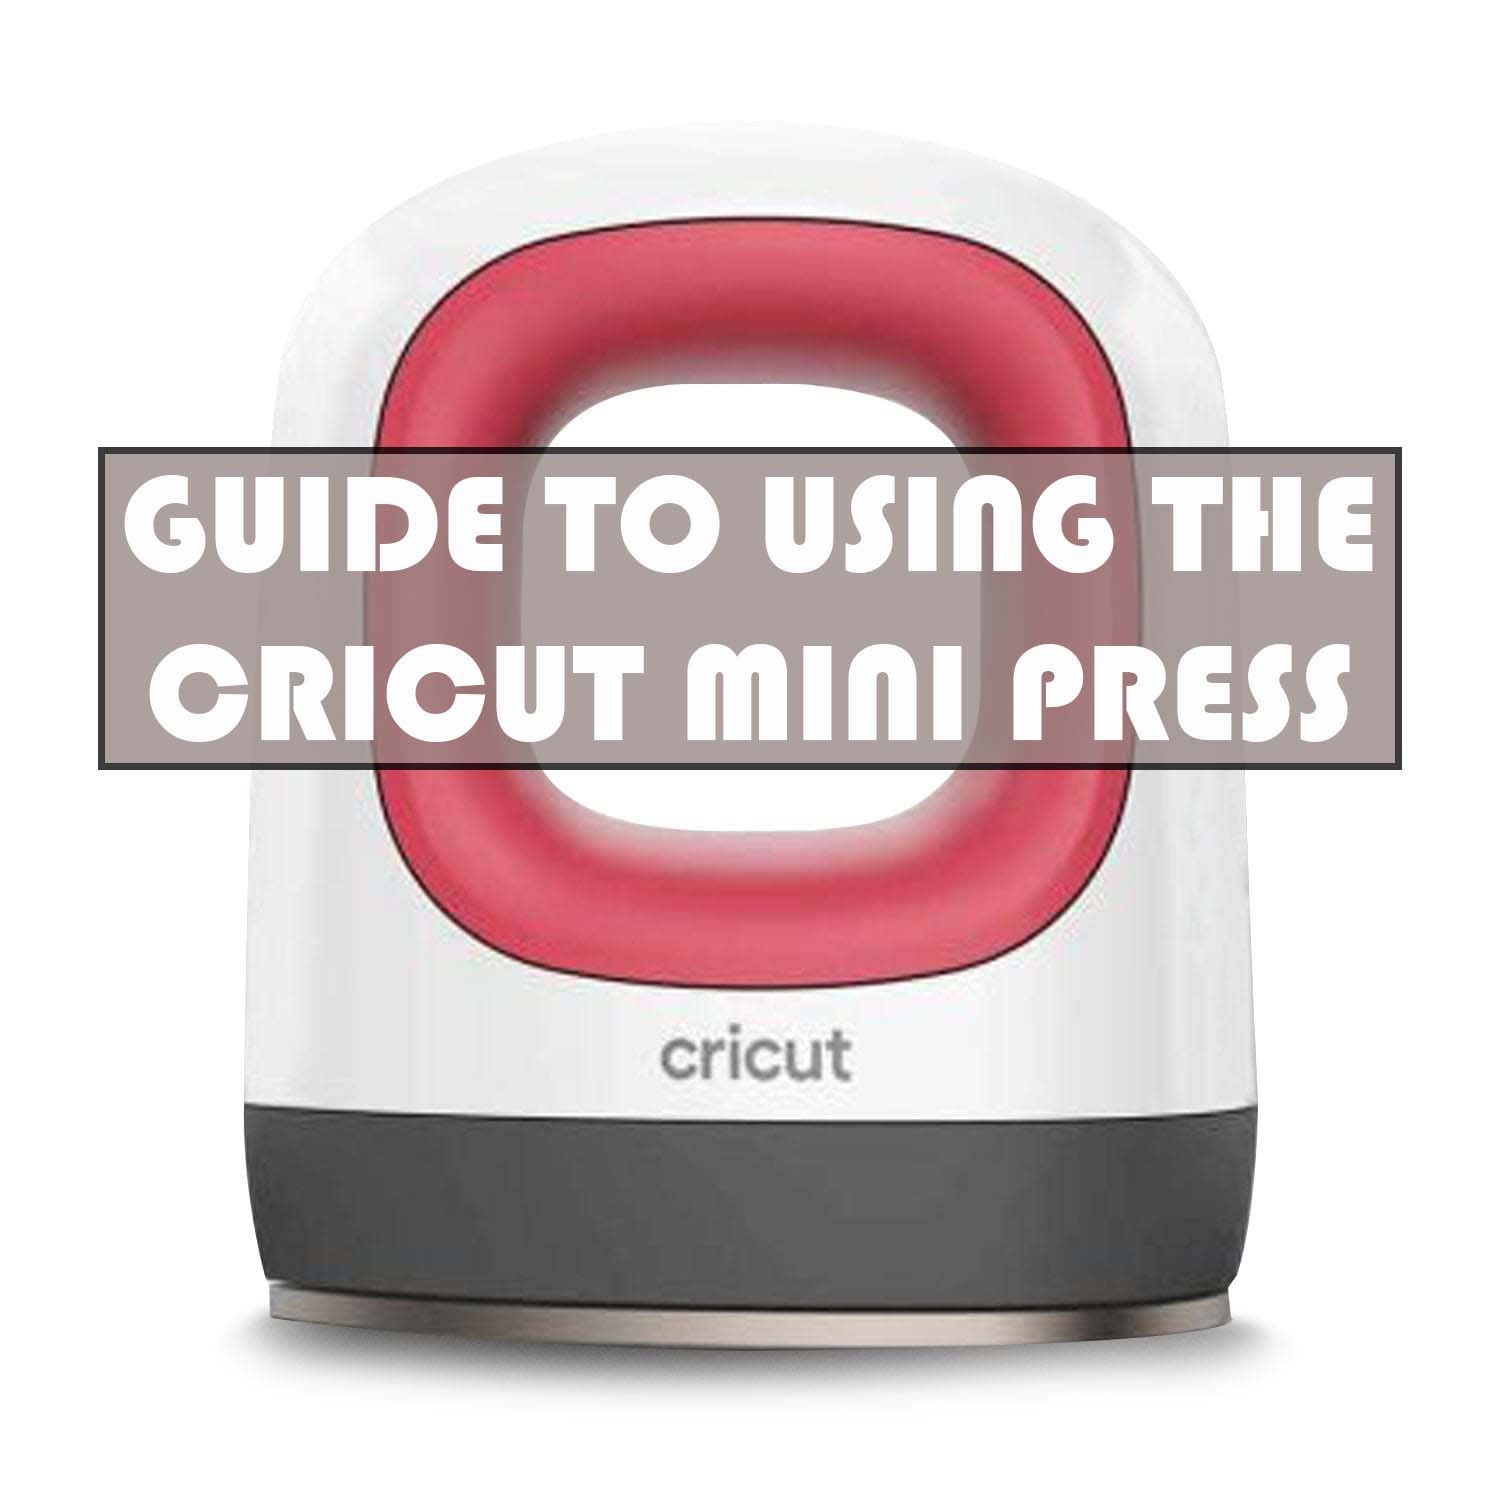 Cricut Mini Press guide - temperature settings, pressing area and